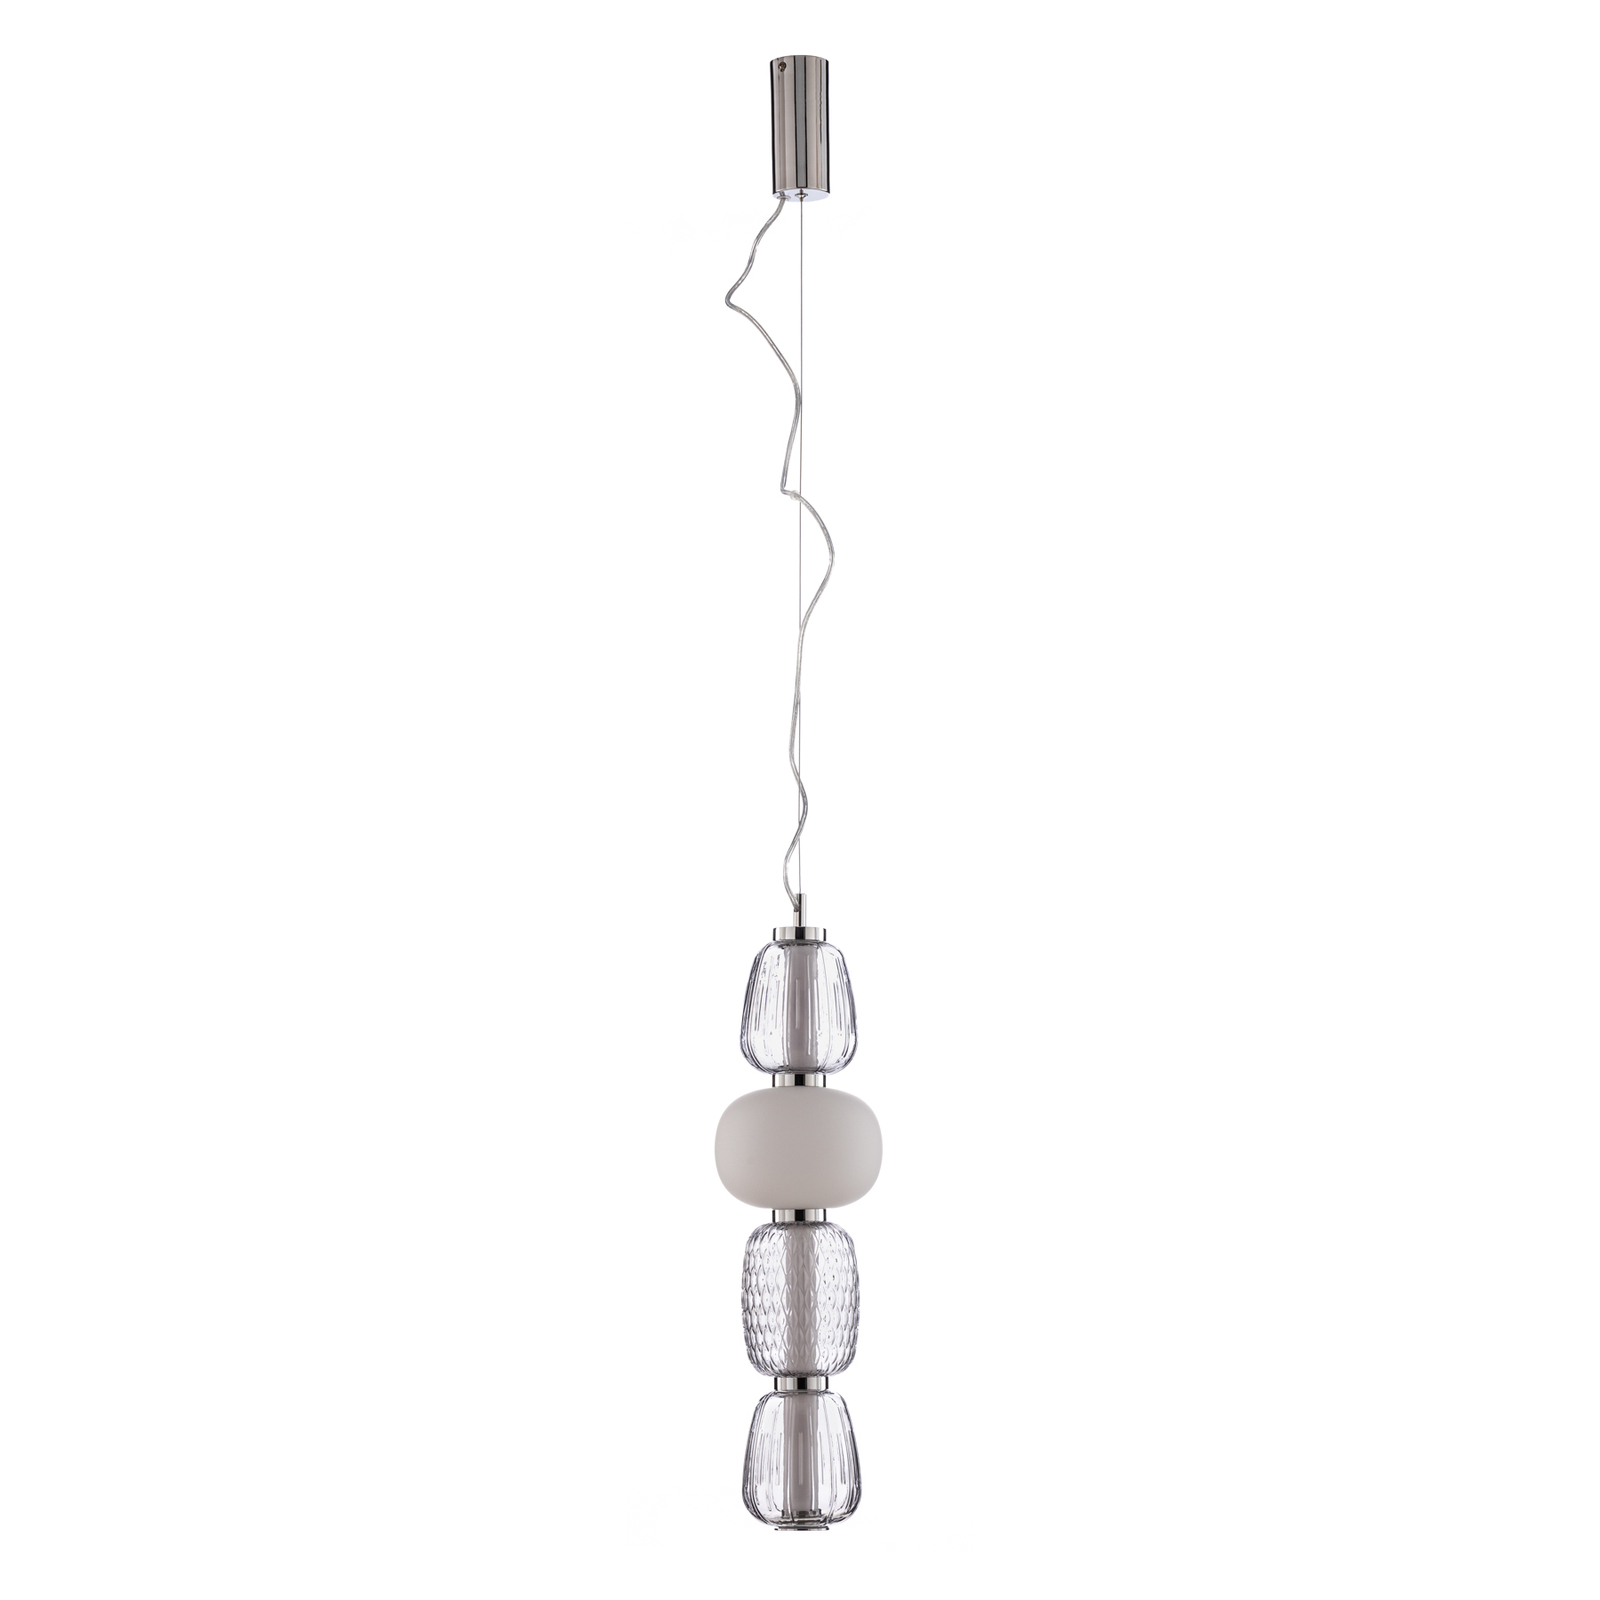 Lucande LED hanglamp Fedra, glas, grijs/wit, Ø 17 cm